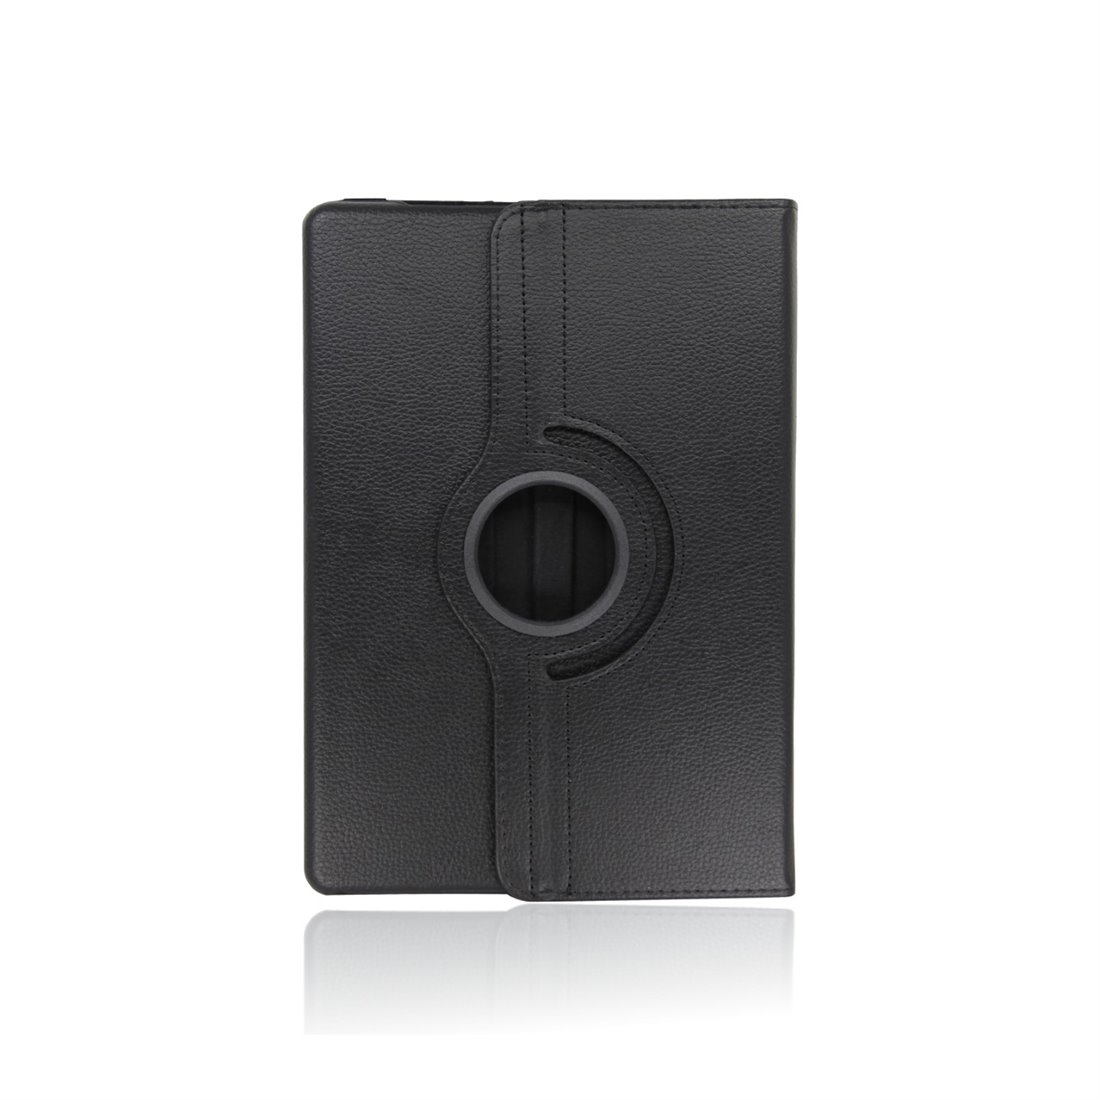 Universele tablet hoesje 7/8 inch zwart